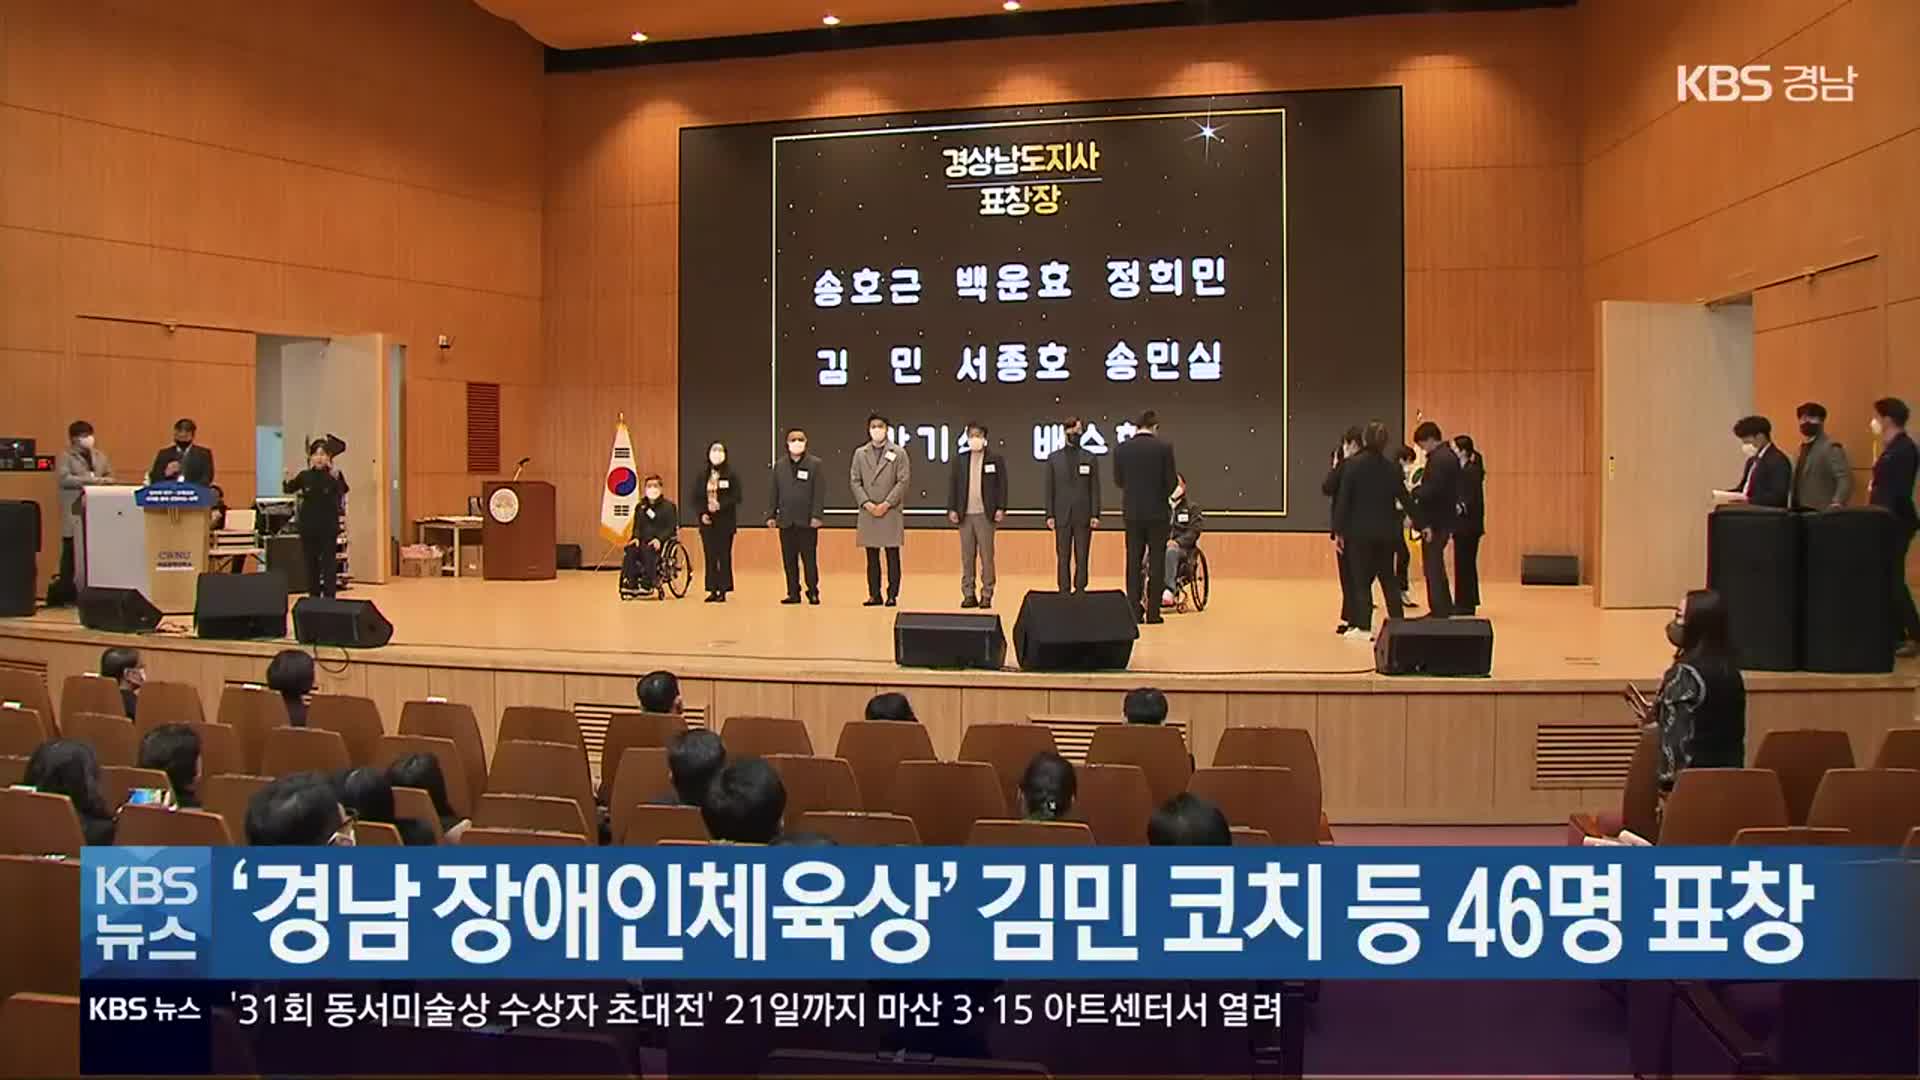 ‘경남 장애인체육상’ 김민 코치 등 46명 표창